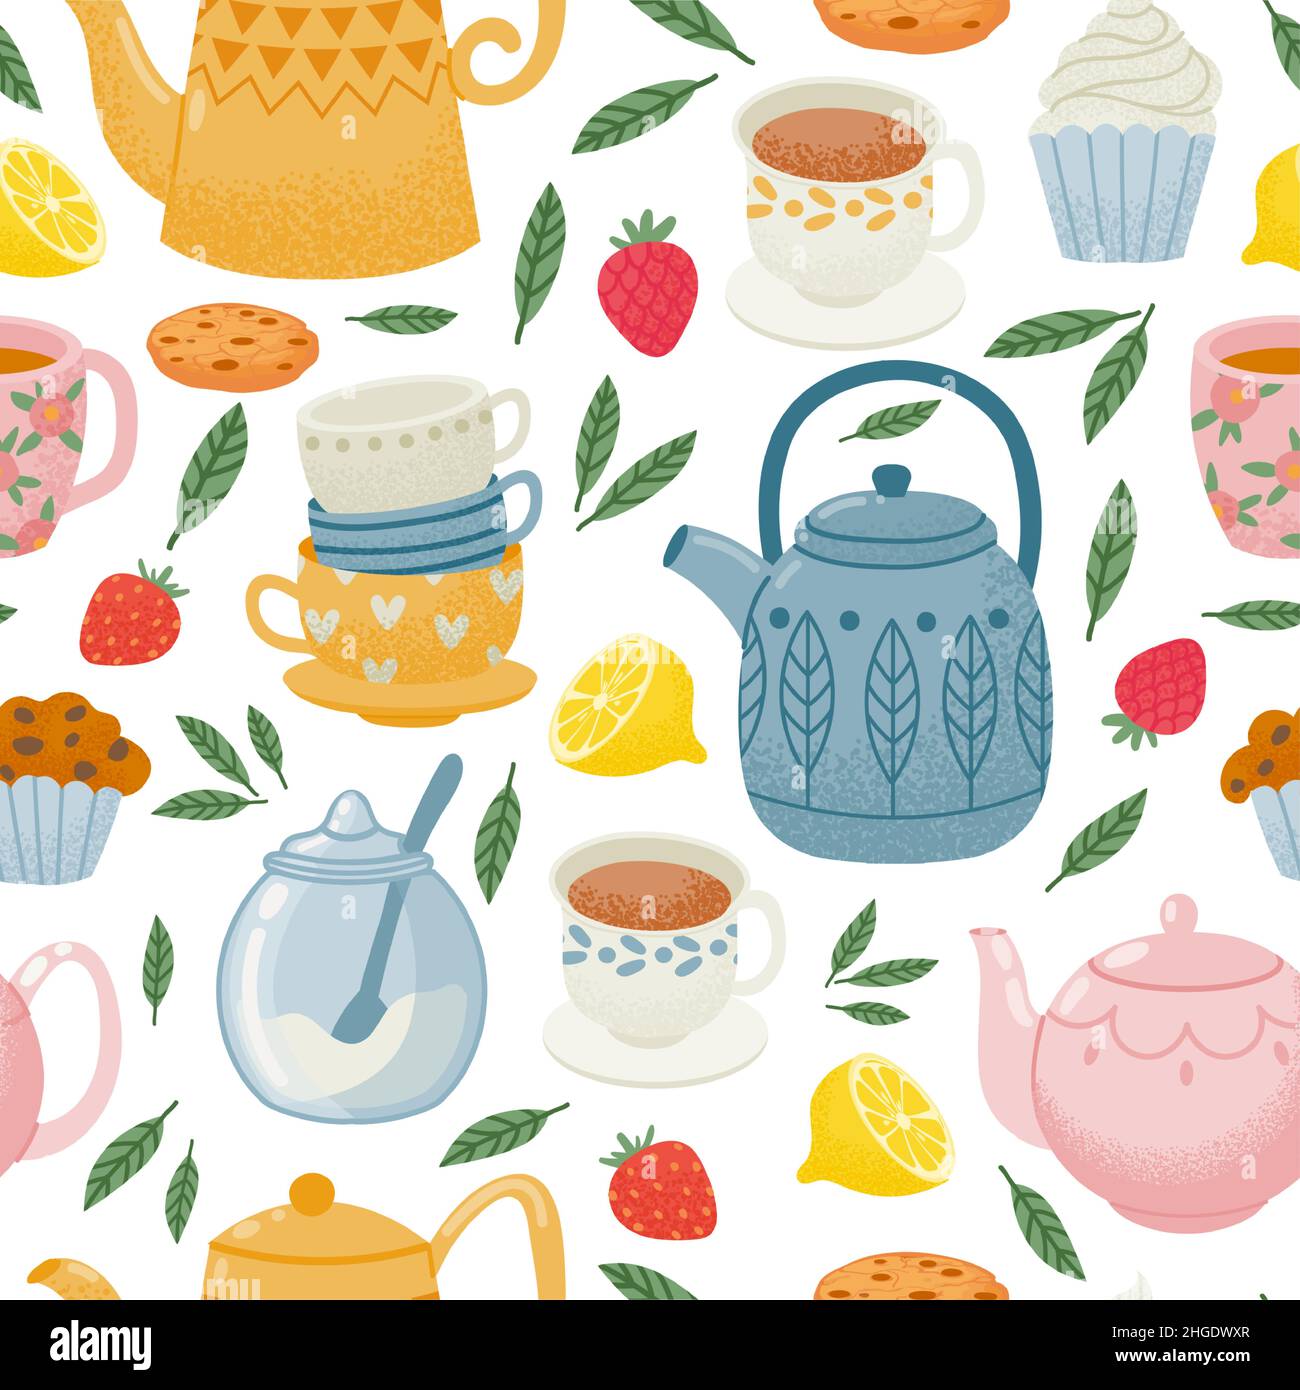 Dekoratives Teestupfmuster mit Teekannen, Tassen und Süßigkeiten. Morgengetränk, englisches Frühstücksmuster. Küche Tapete Vektor-Design Stock Vektor